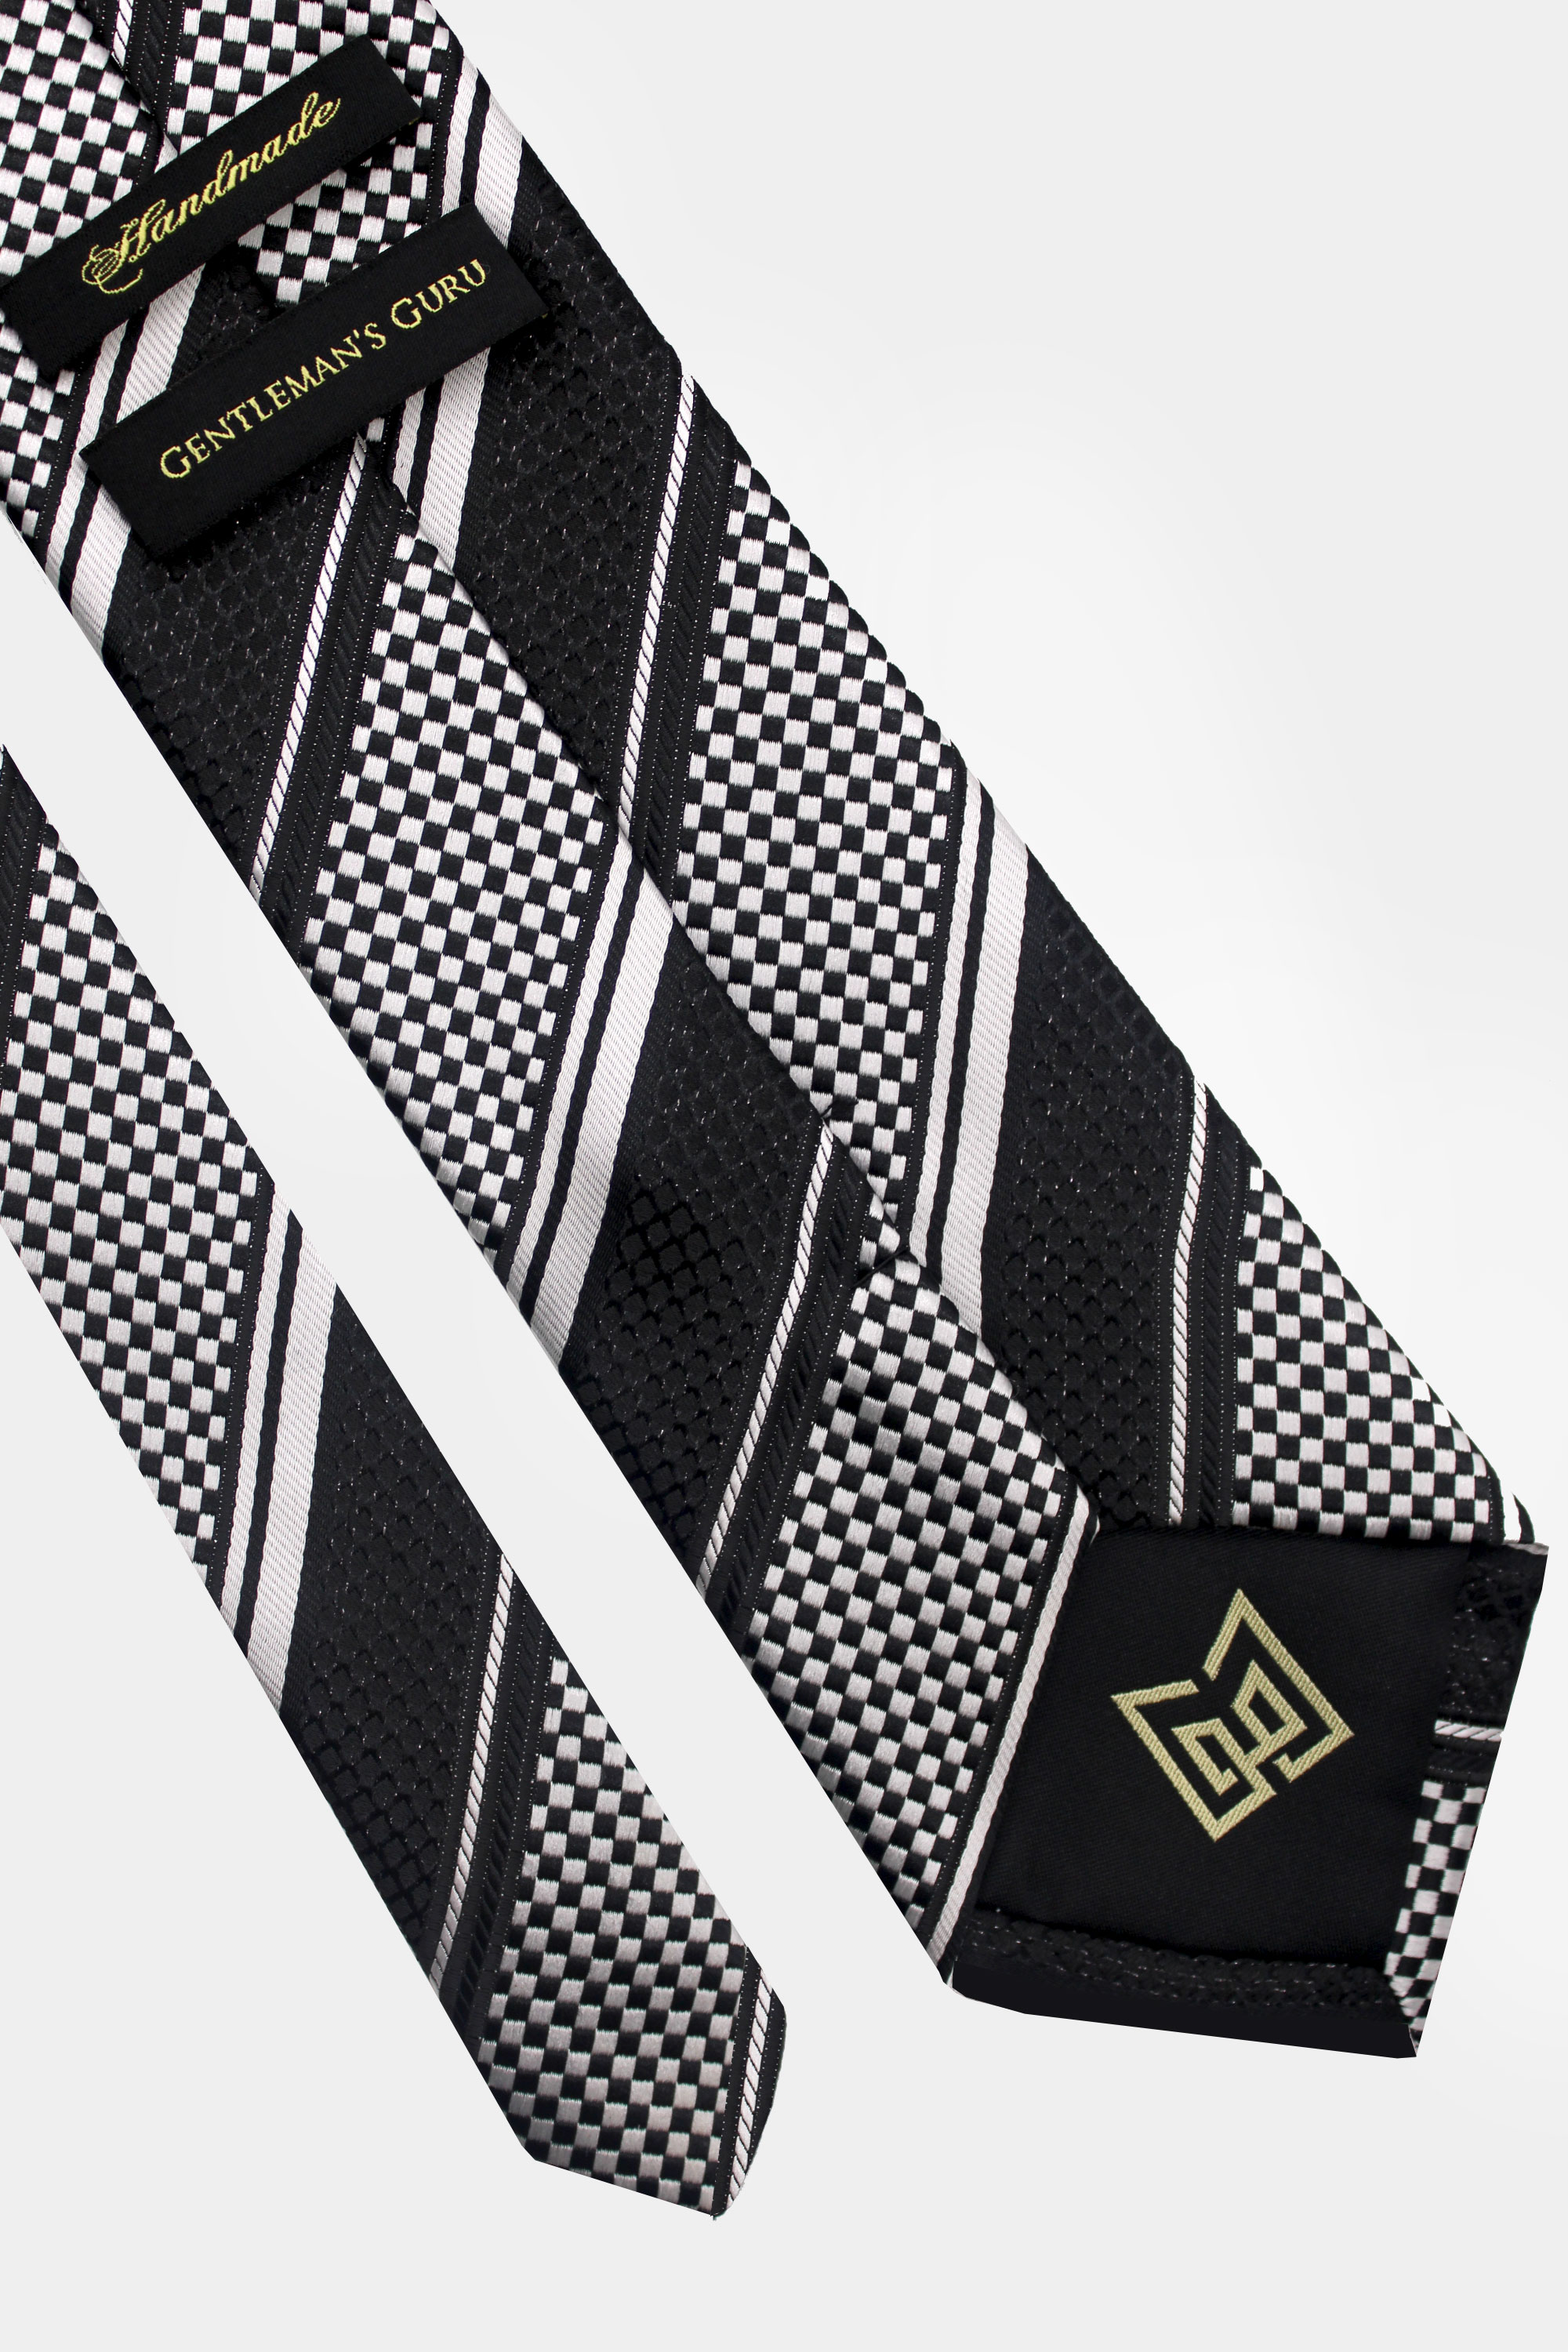 Black-and-White-Striped-Tie-from-Gentlemansguru.com